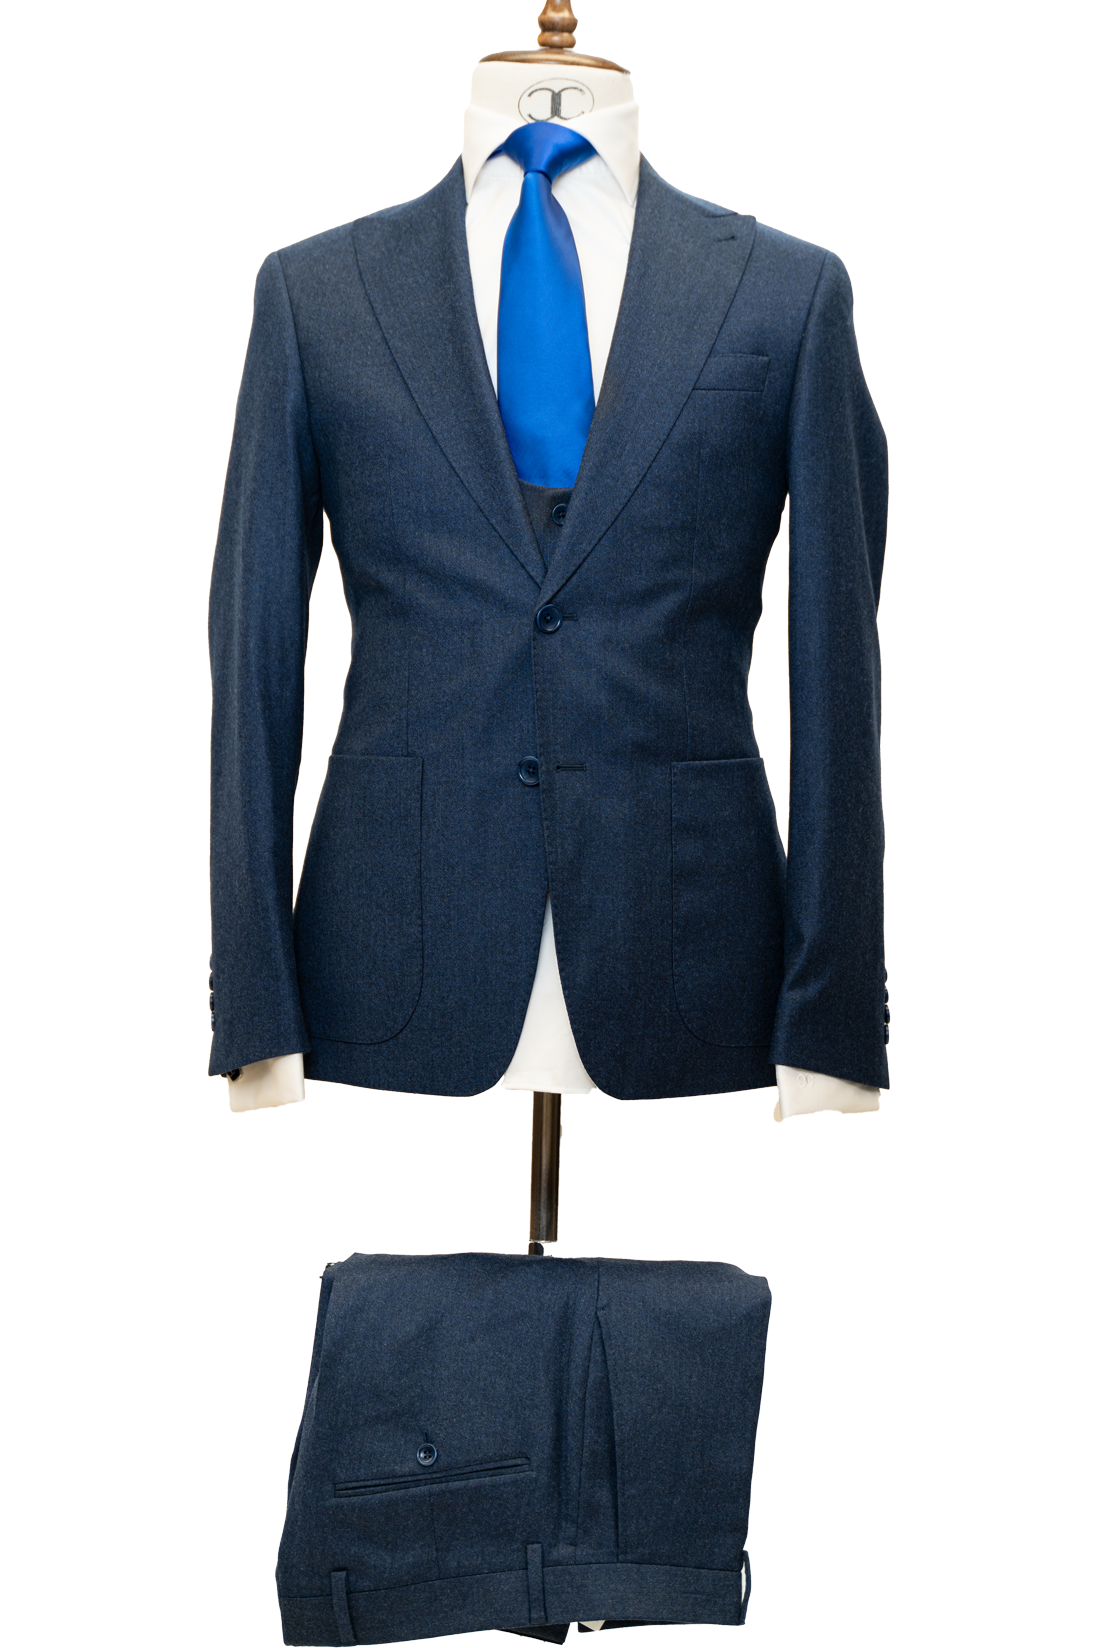 Zignone - Dark Blue Cashmere 3-Piece Fit Slim Fit Suit with Patch Pockets